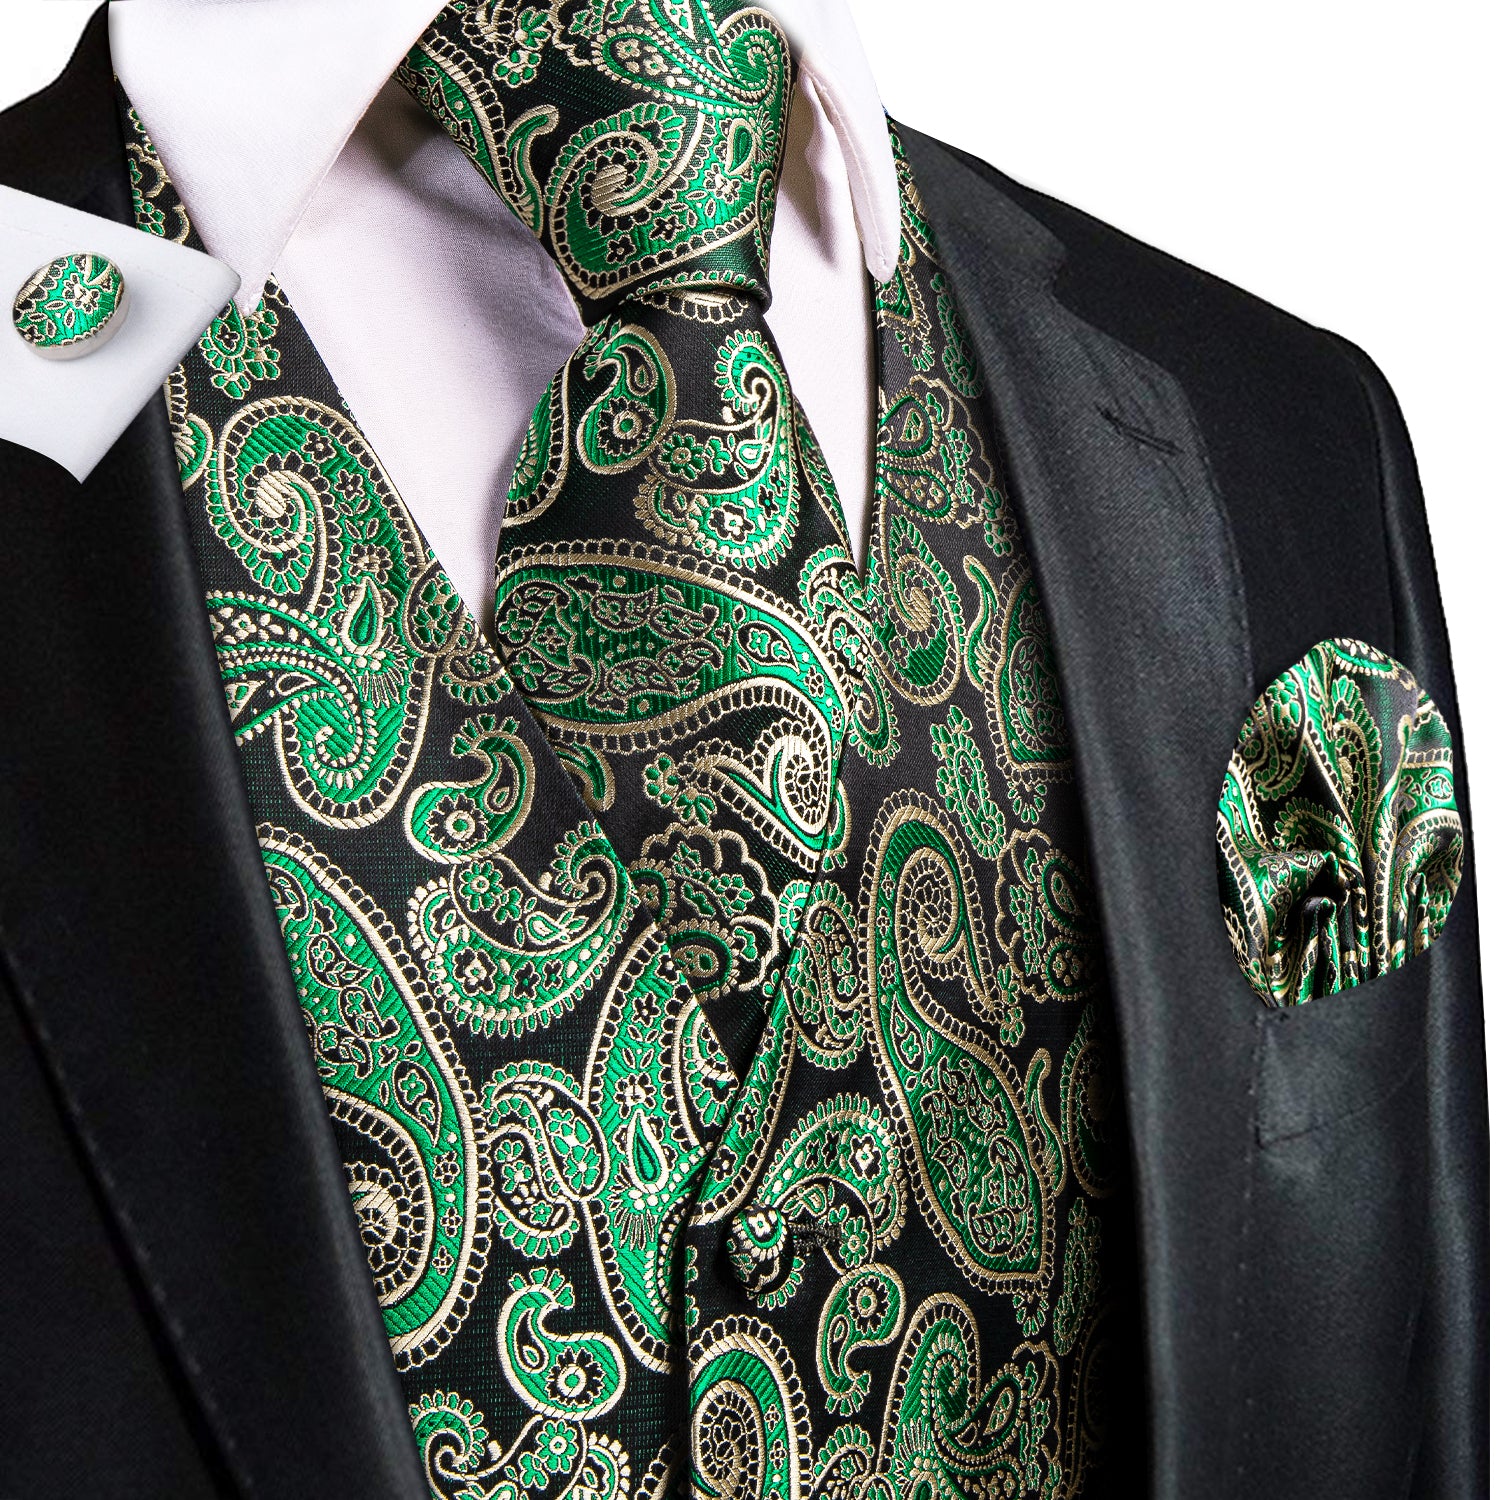 Classic Emerald Green Paisley Silk Men's Vest Hanky Cufflinks Tie Set Waistcoat Suit Set